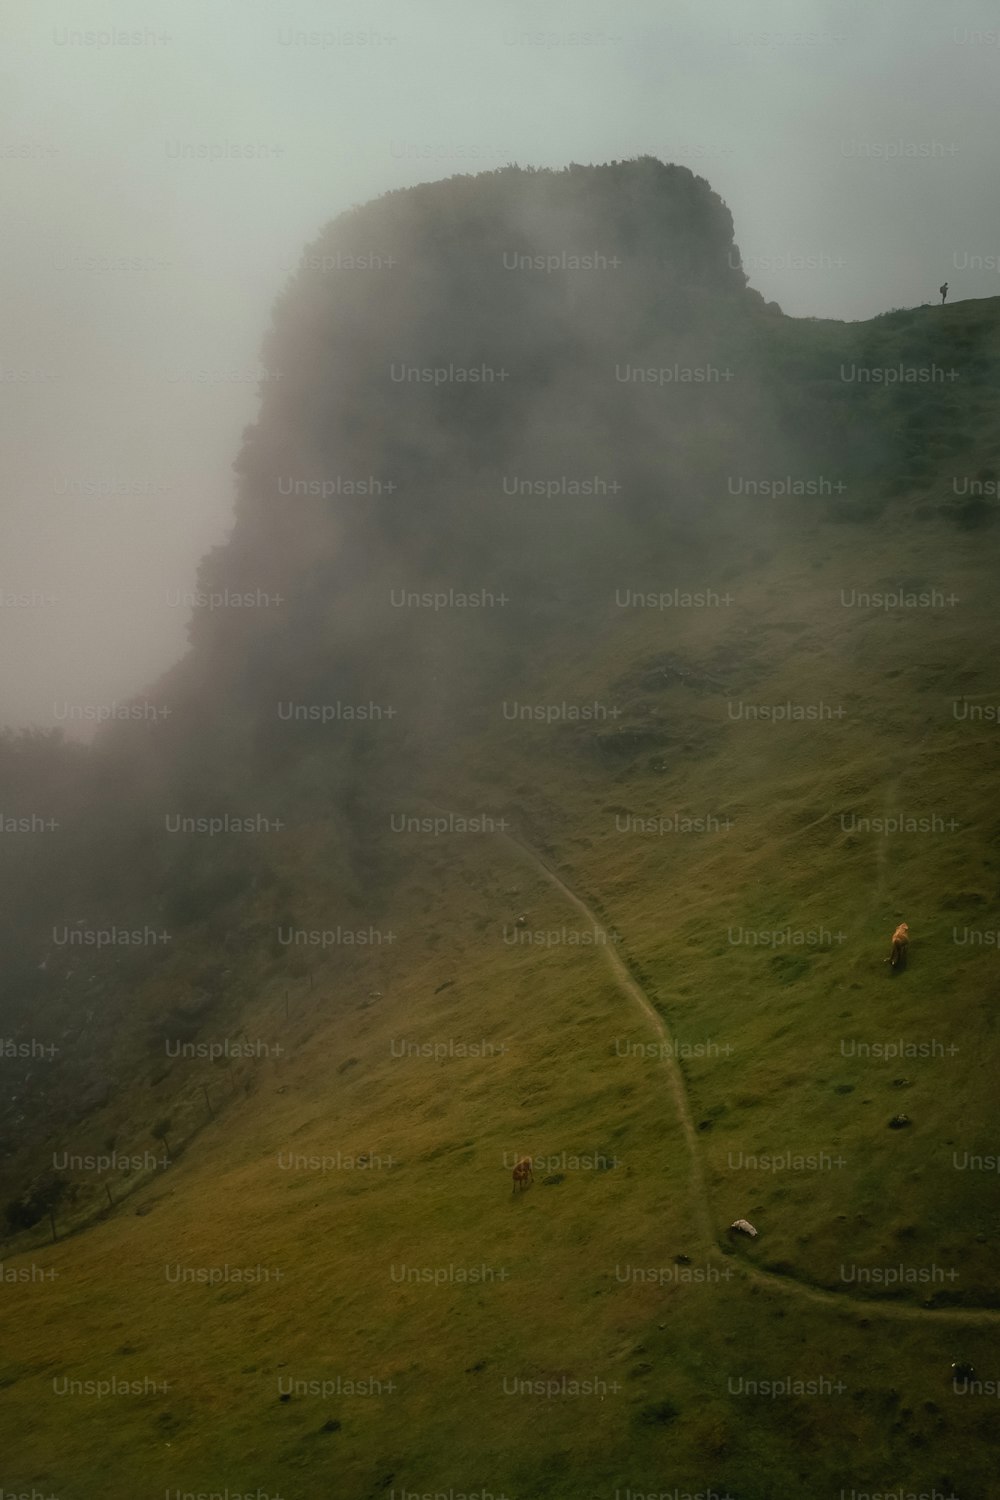 Schafe grasen auf einem grasbewachsenen Hügel im Nebel